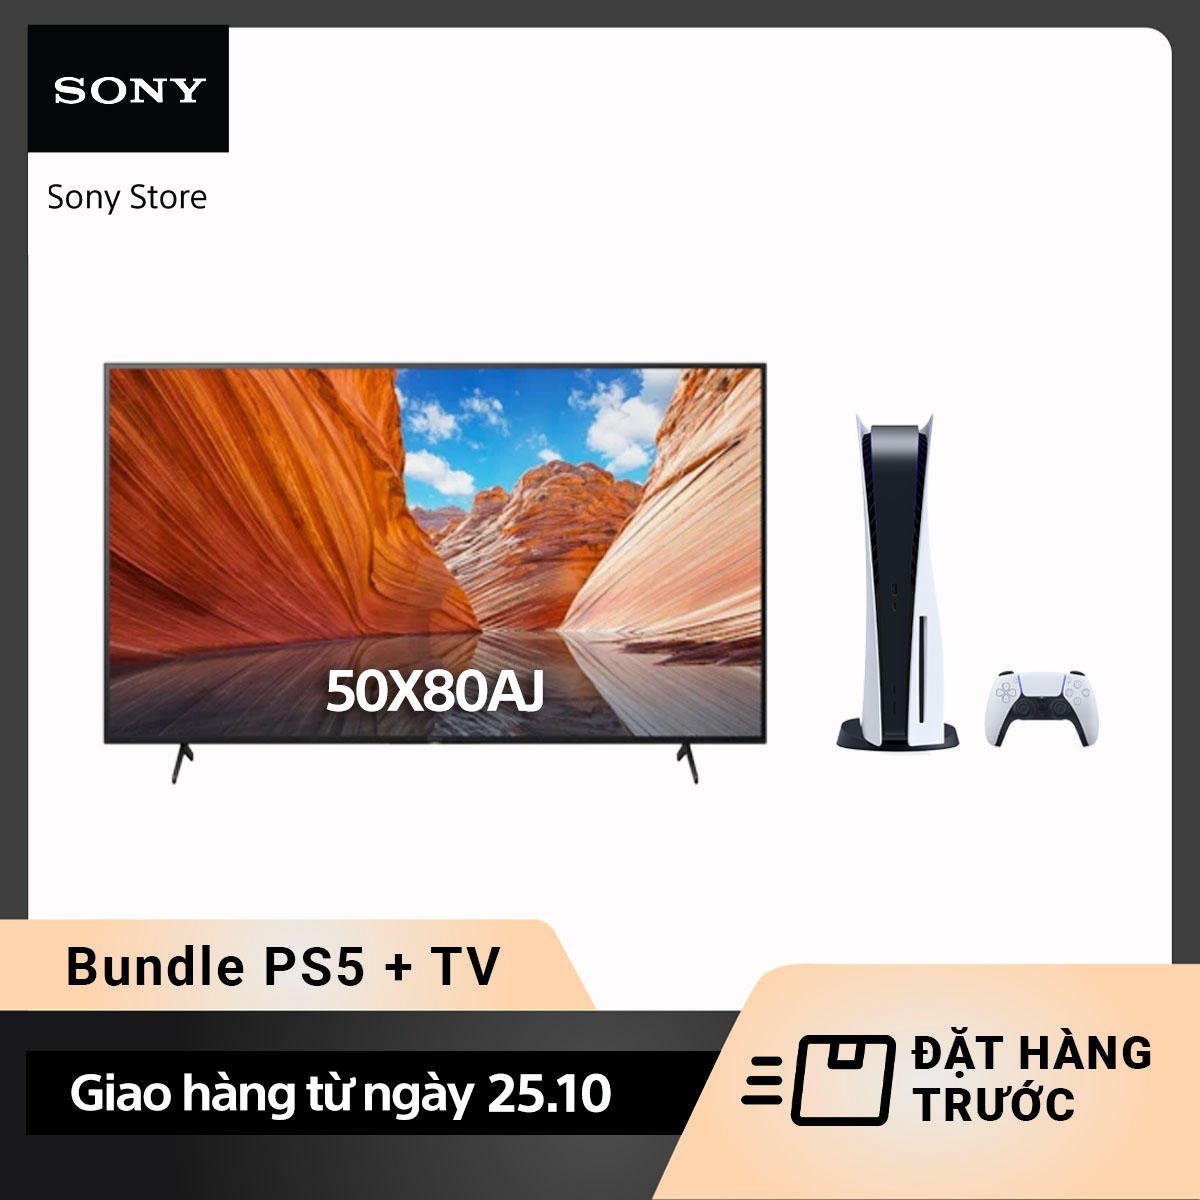 [Đặt hàng trước] Combo Máy chơi game Sony PlayStation 5 (PS5) và Smart Tivi Sony 4K 55 inch KD-55X80AJ – Giao hàng từ 25.10